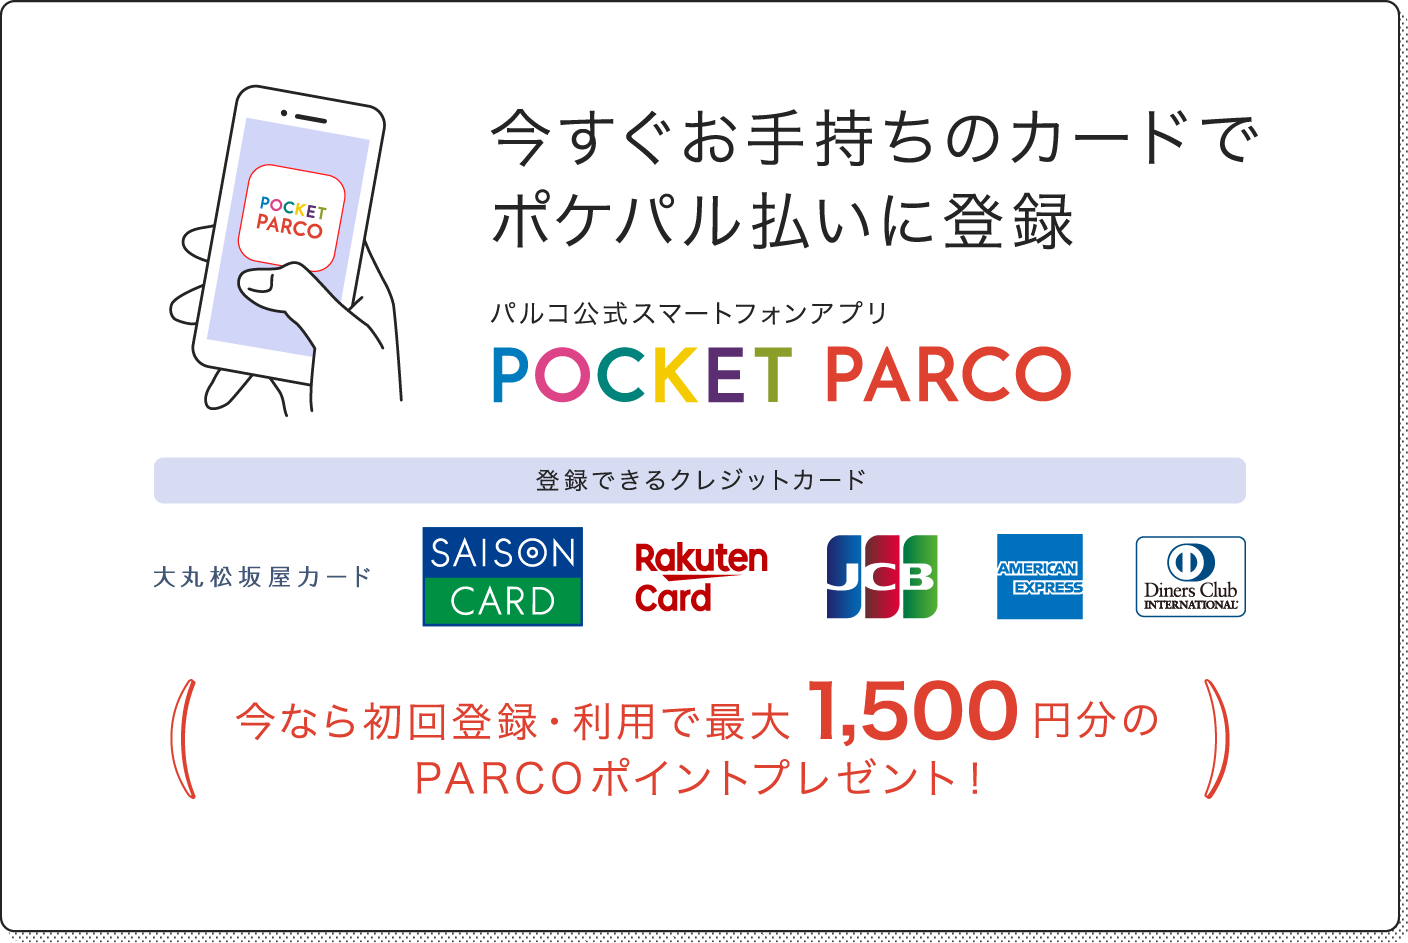 今すぐお手持ちのカードでポケパル払いに登録 パルコ公式スマートフォンアプリ POCKET PARCO 今なら初回登録・利用で最大1,500円分のPARCOポイントプレゼント！ ※PARCOカード新規入会の場合は最大2,000円分